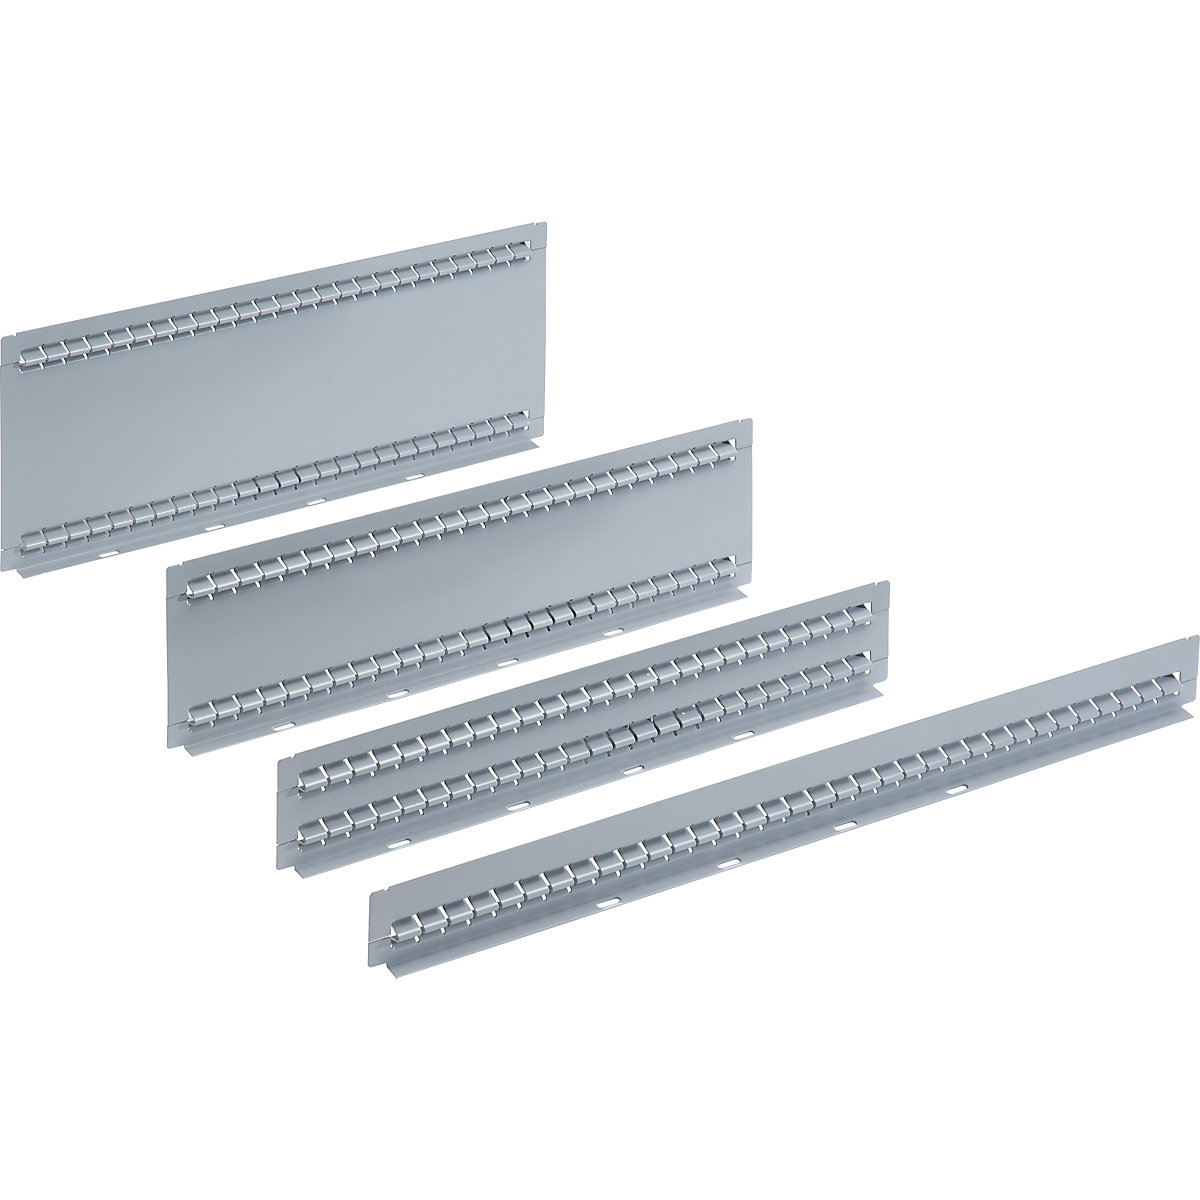 LISTA – Material de divisão de gavetas, embalagem = 5 unid., para gavetas com 150 mm de altura, parede ranhurada, comprimento 459 mm